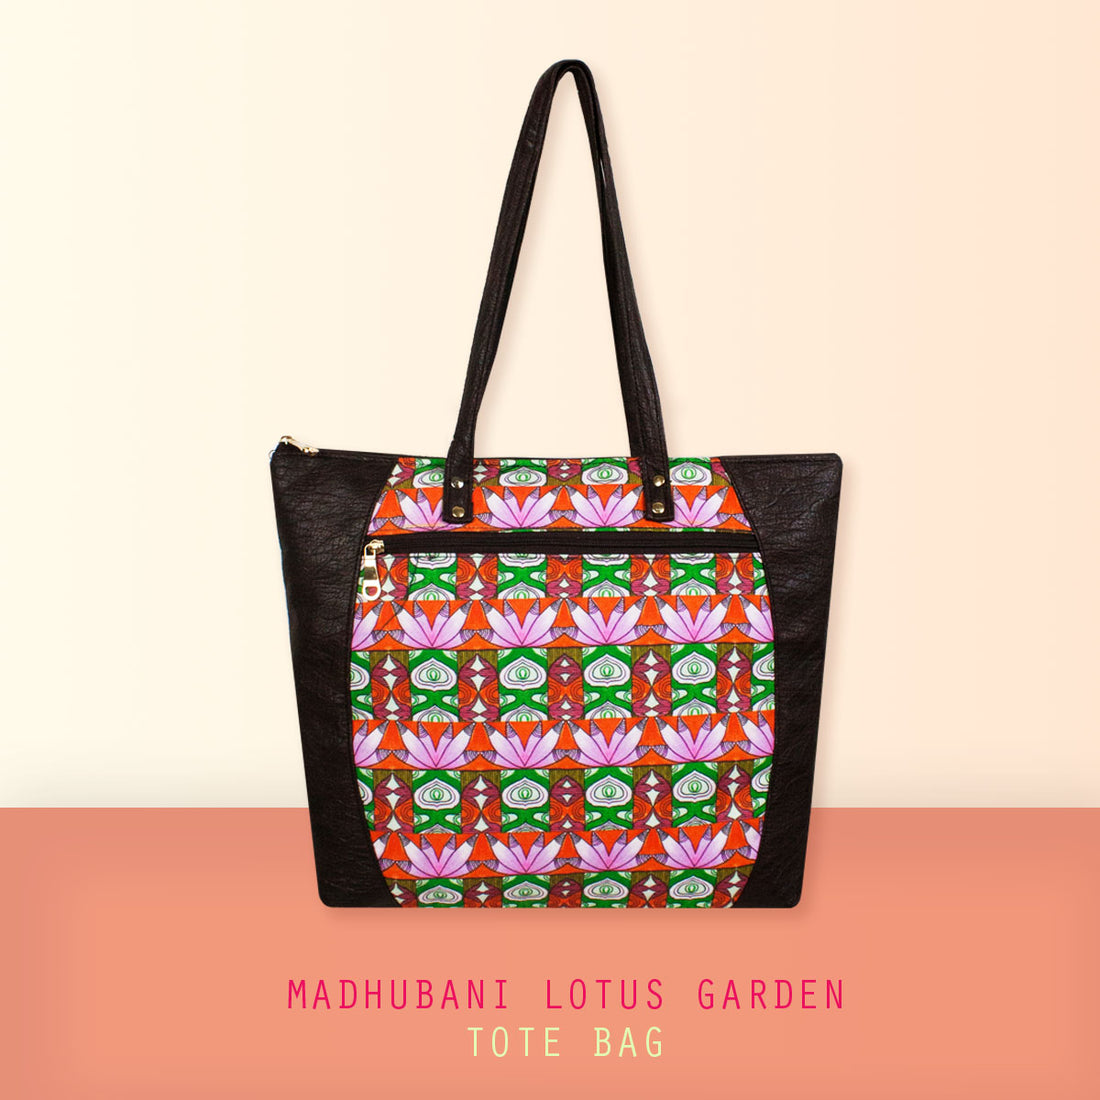 Madhubani Lotus Garden Tote Bag